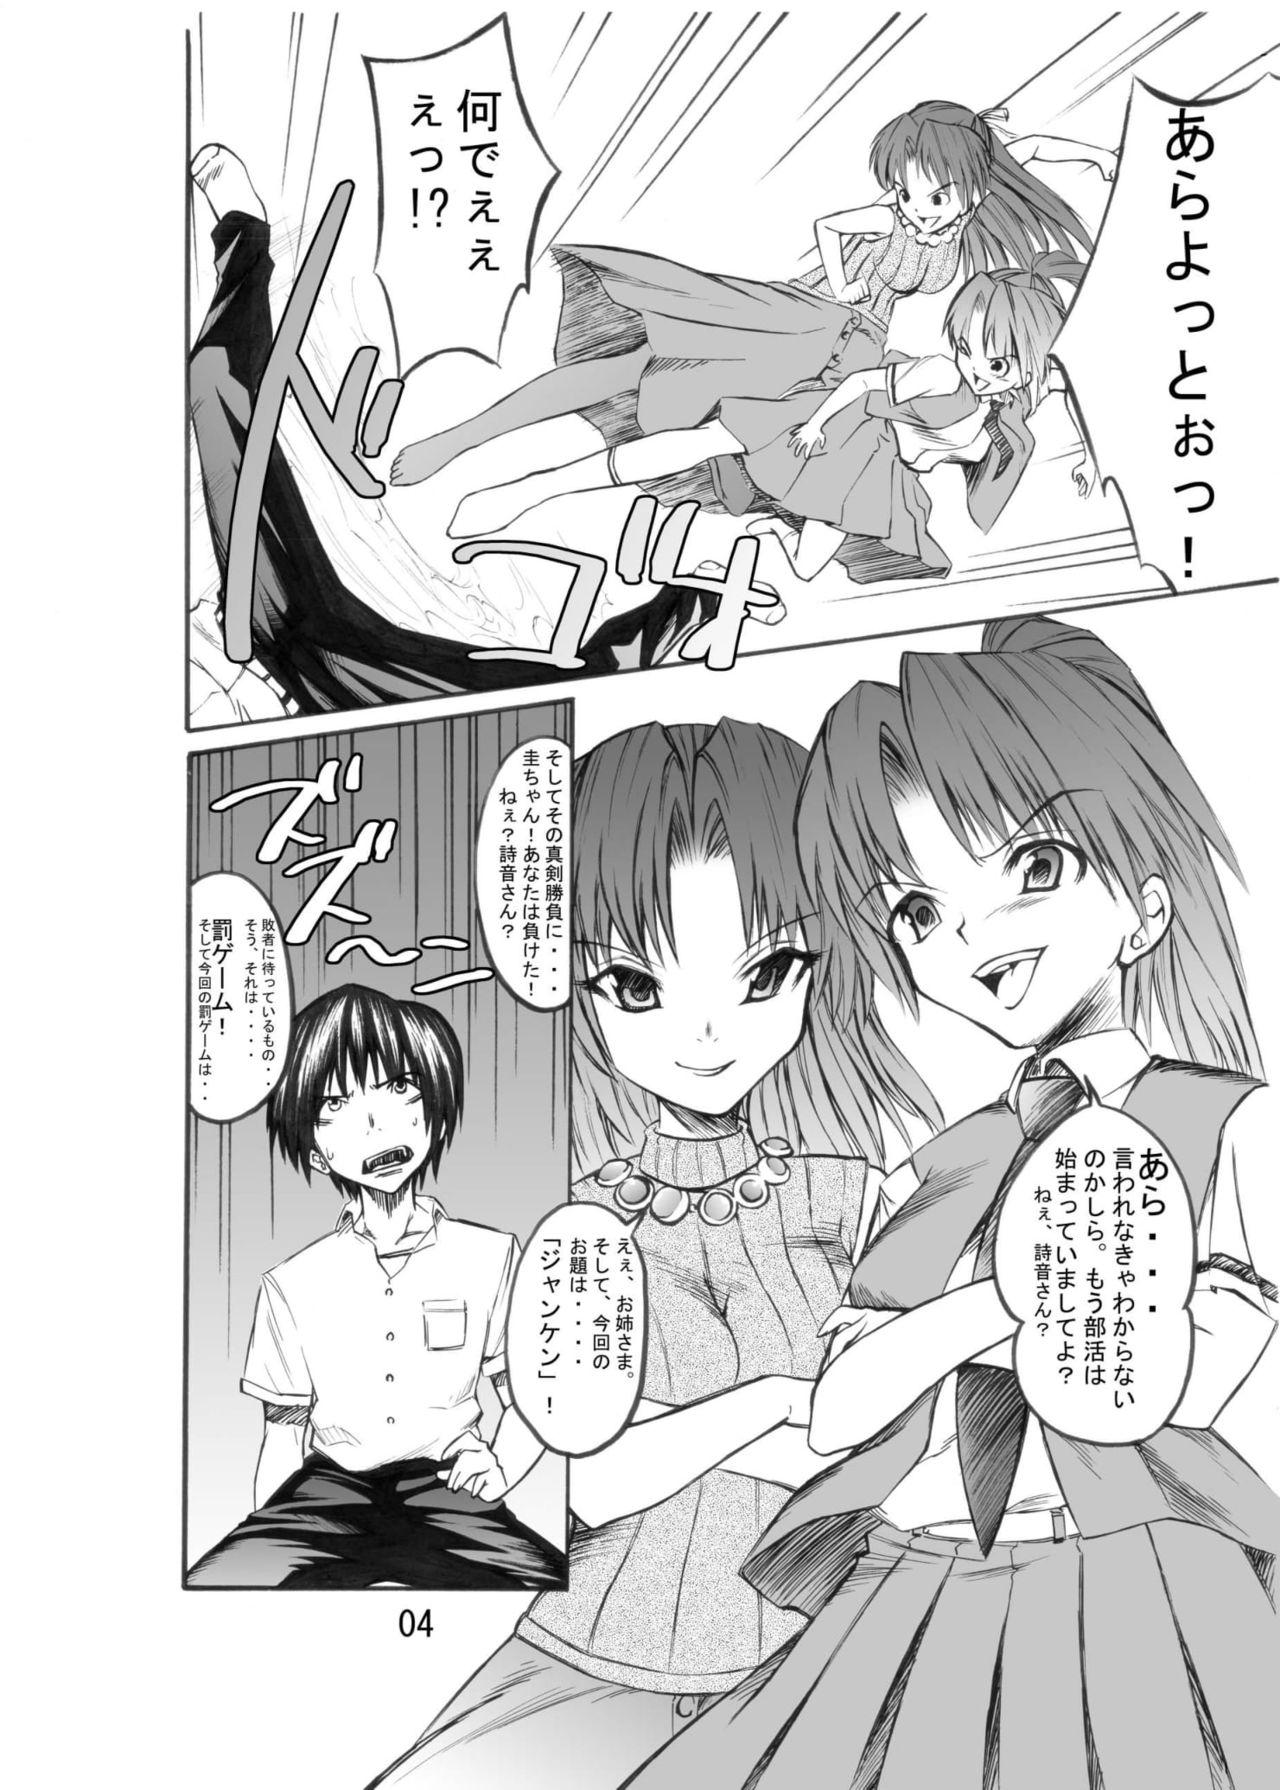 Mature Higurashi May Cry? - Higurashi no naku koro ni Blackmail - Page 4